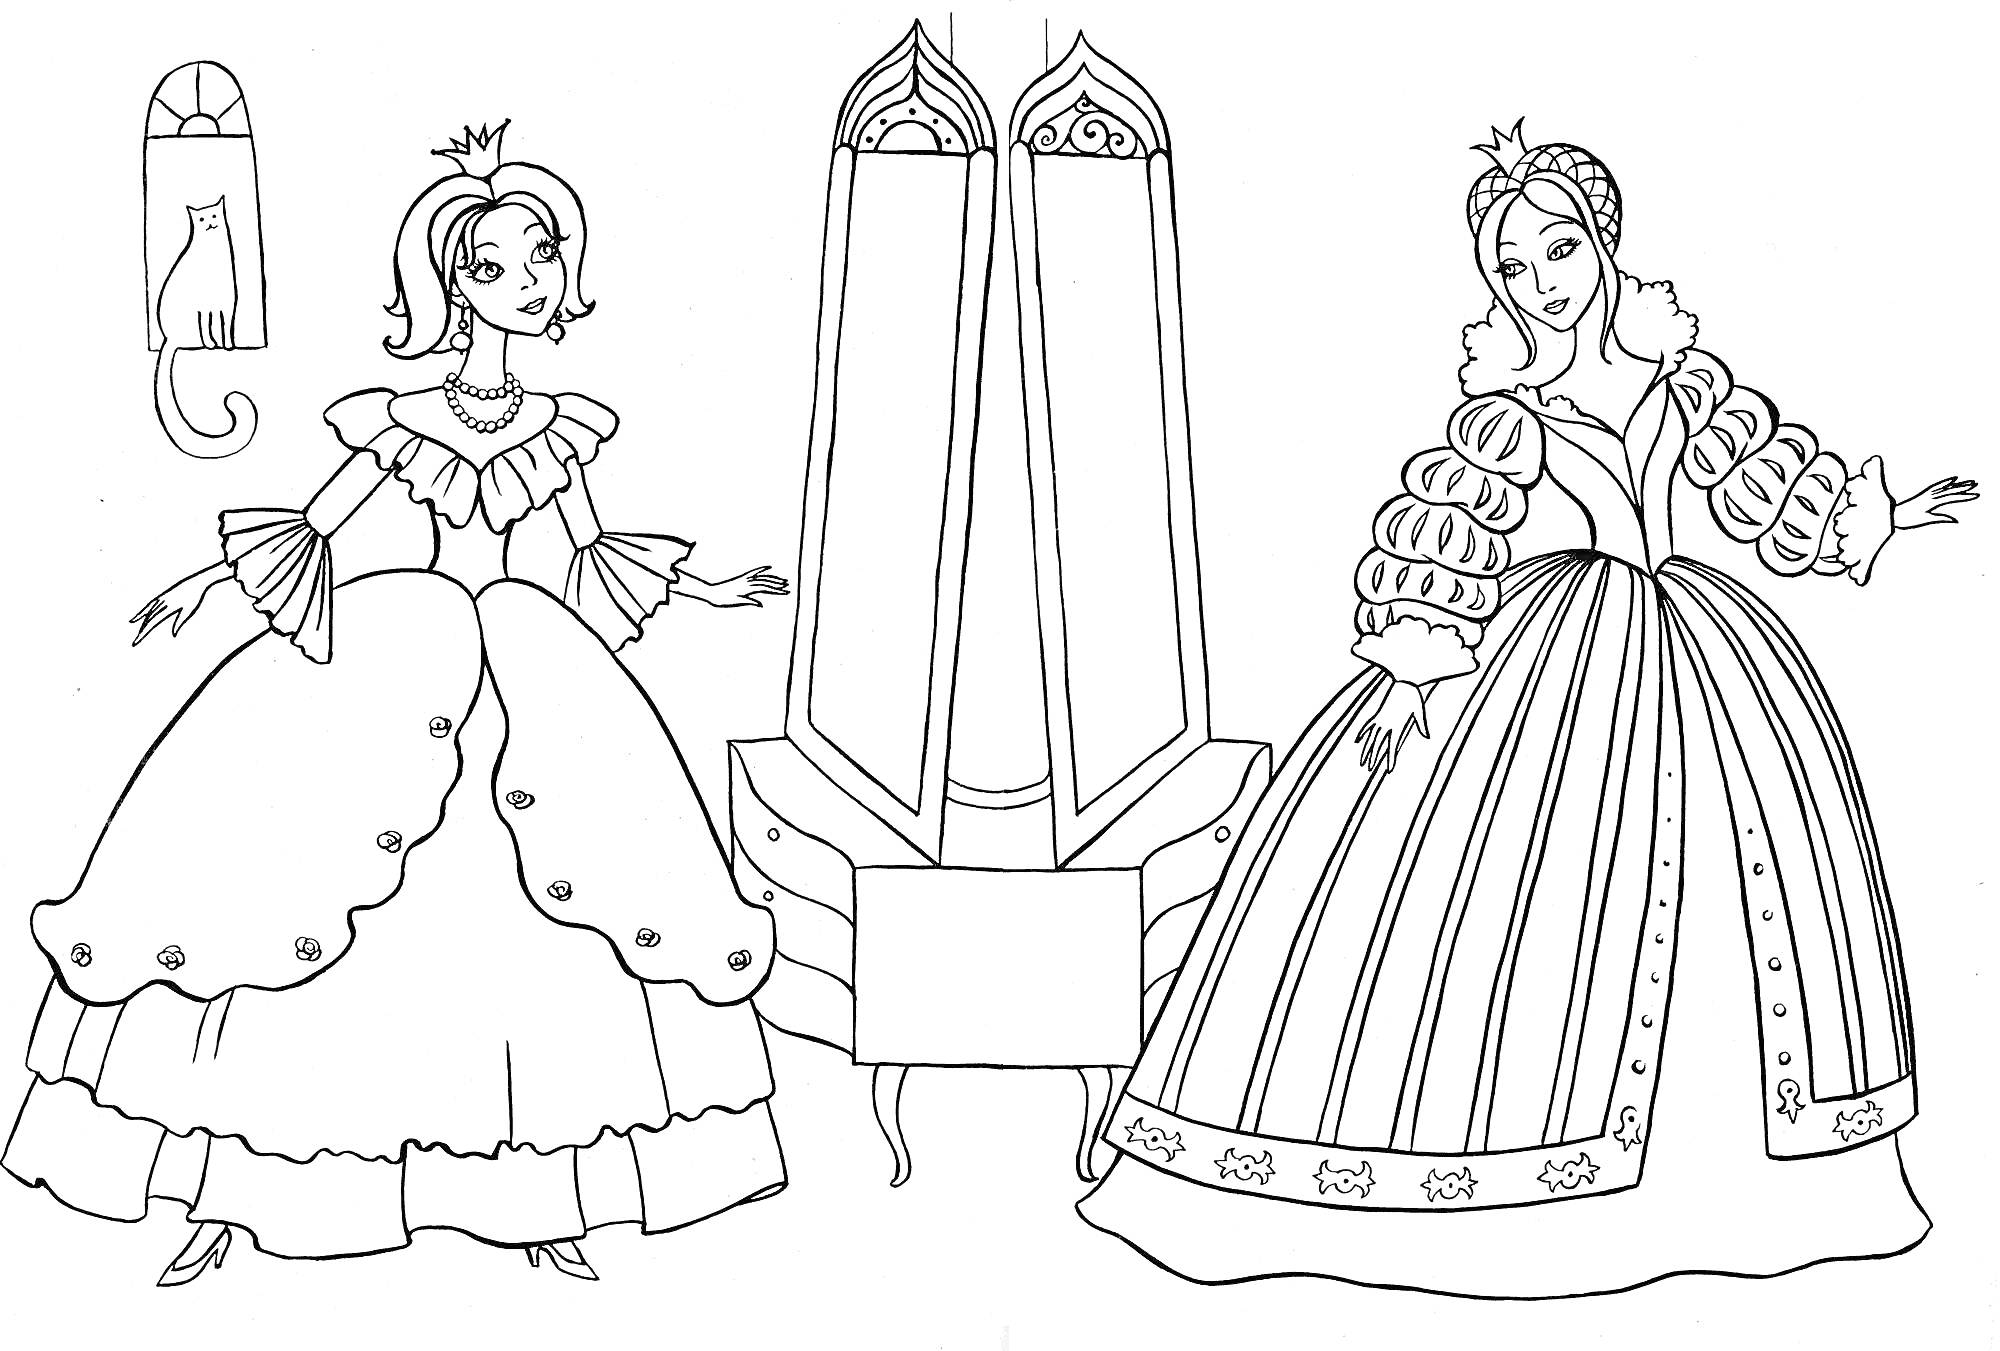 Две сестры-принцессы перед большим зеркалом с драпировкой